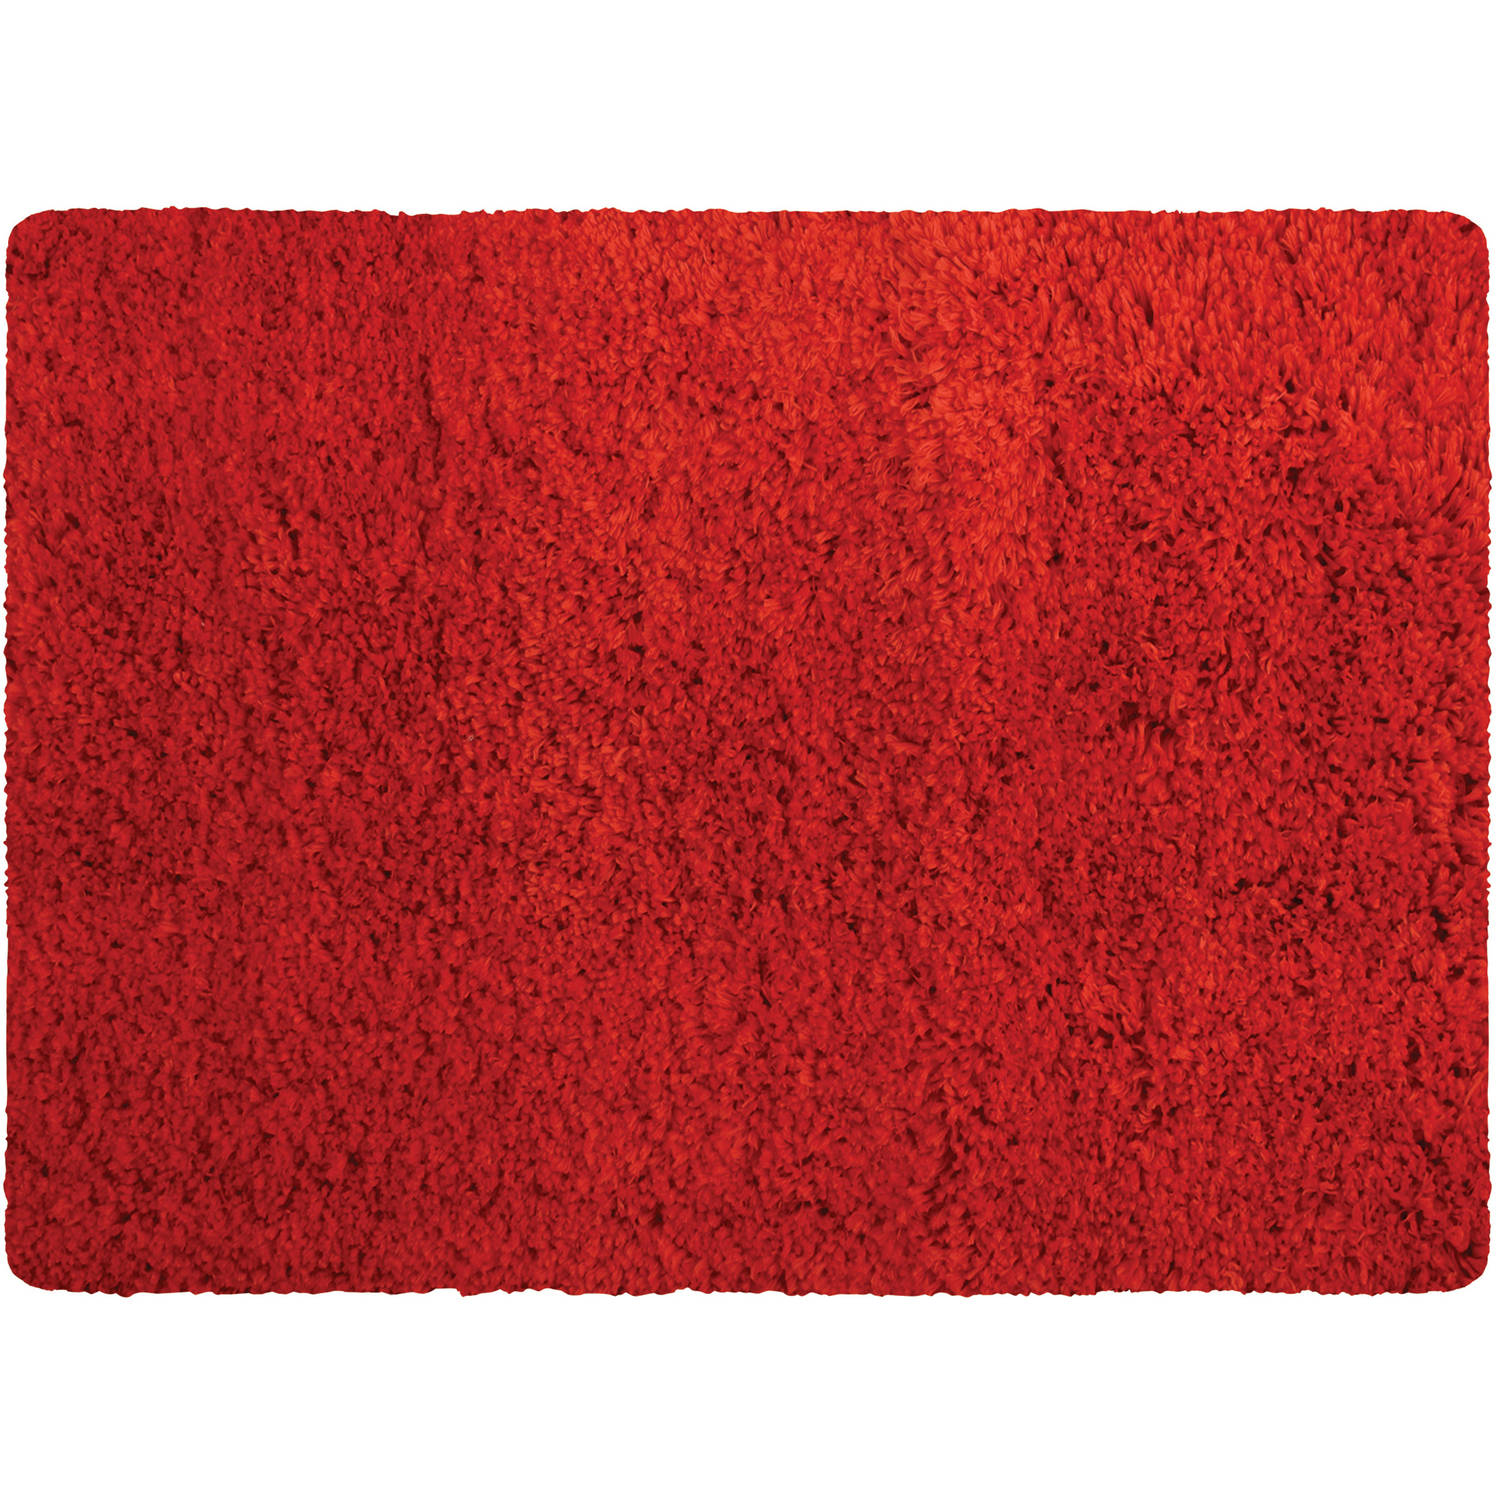 MSV Badkamerkleedje/badmat tapijt - voor de vloer - rood - 50 x 70 cm - Microfibre - langharig